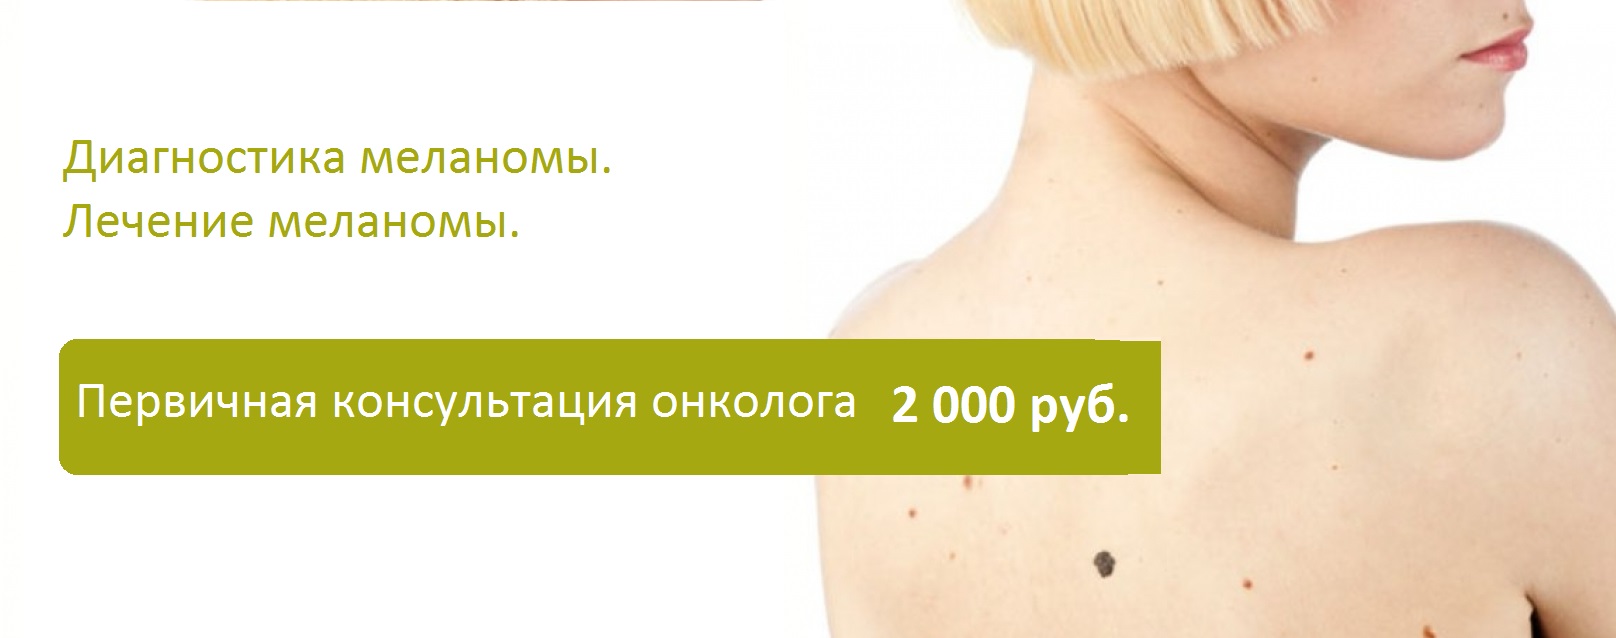 Лечение меланомы кожи в Москве - Удаление  меланомы   